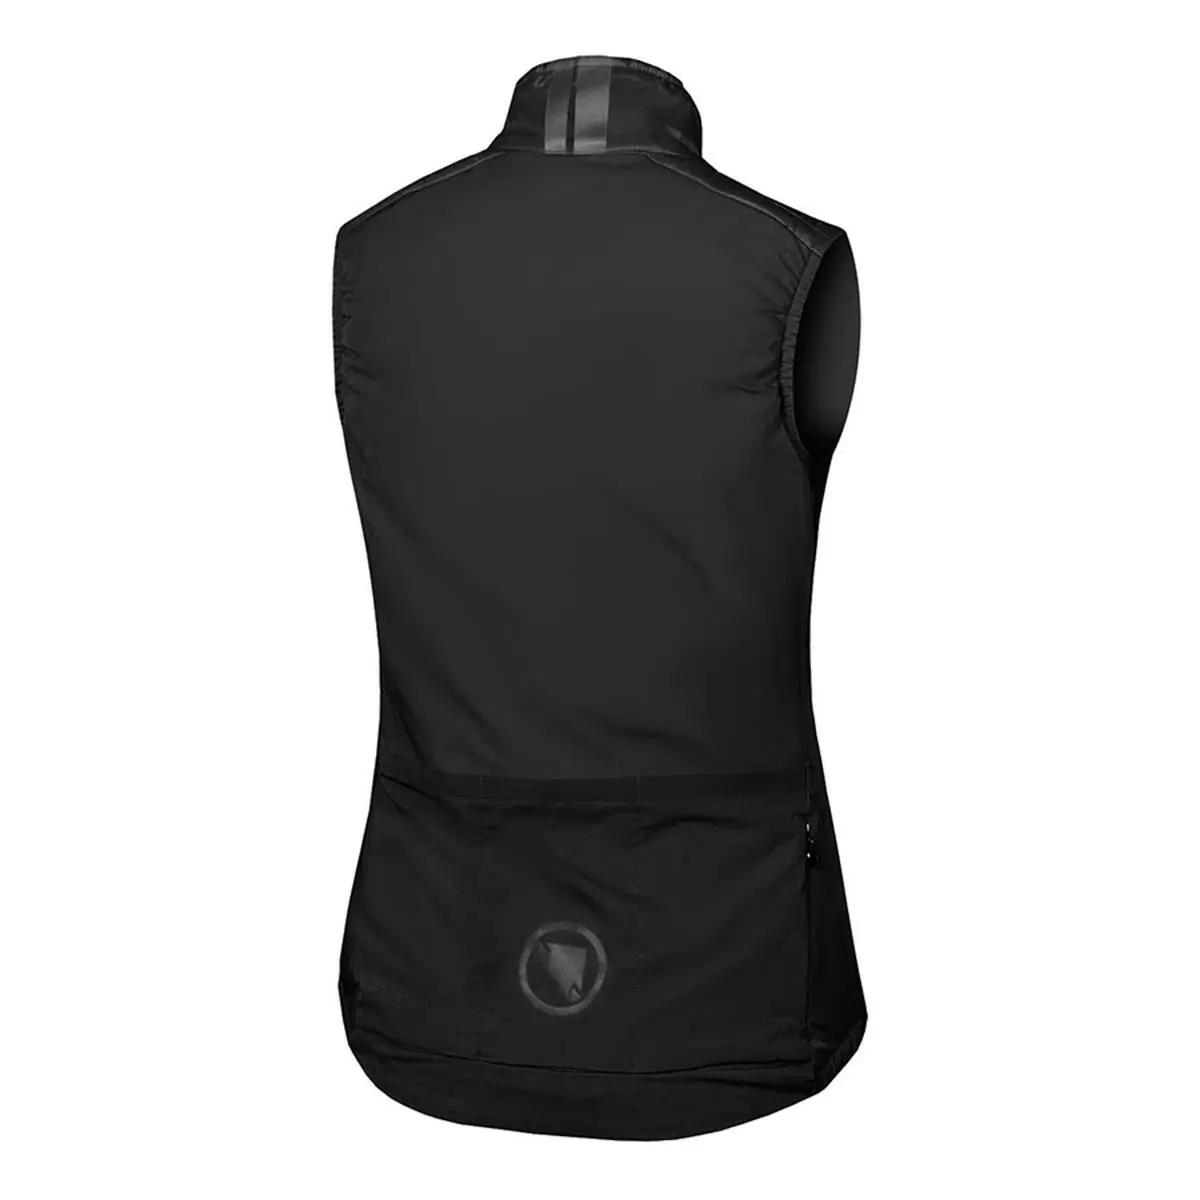 Pro SL PrimaLoft Rain/Windproof Vest - Chaleco para mujer, color negro, talla S #1